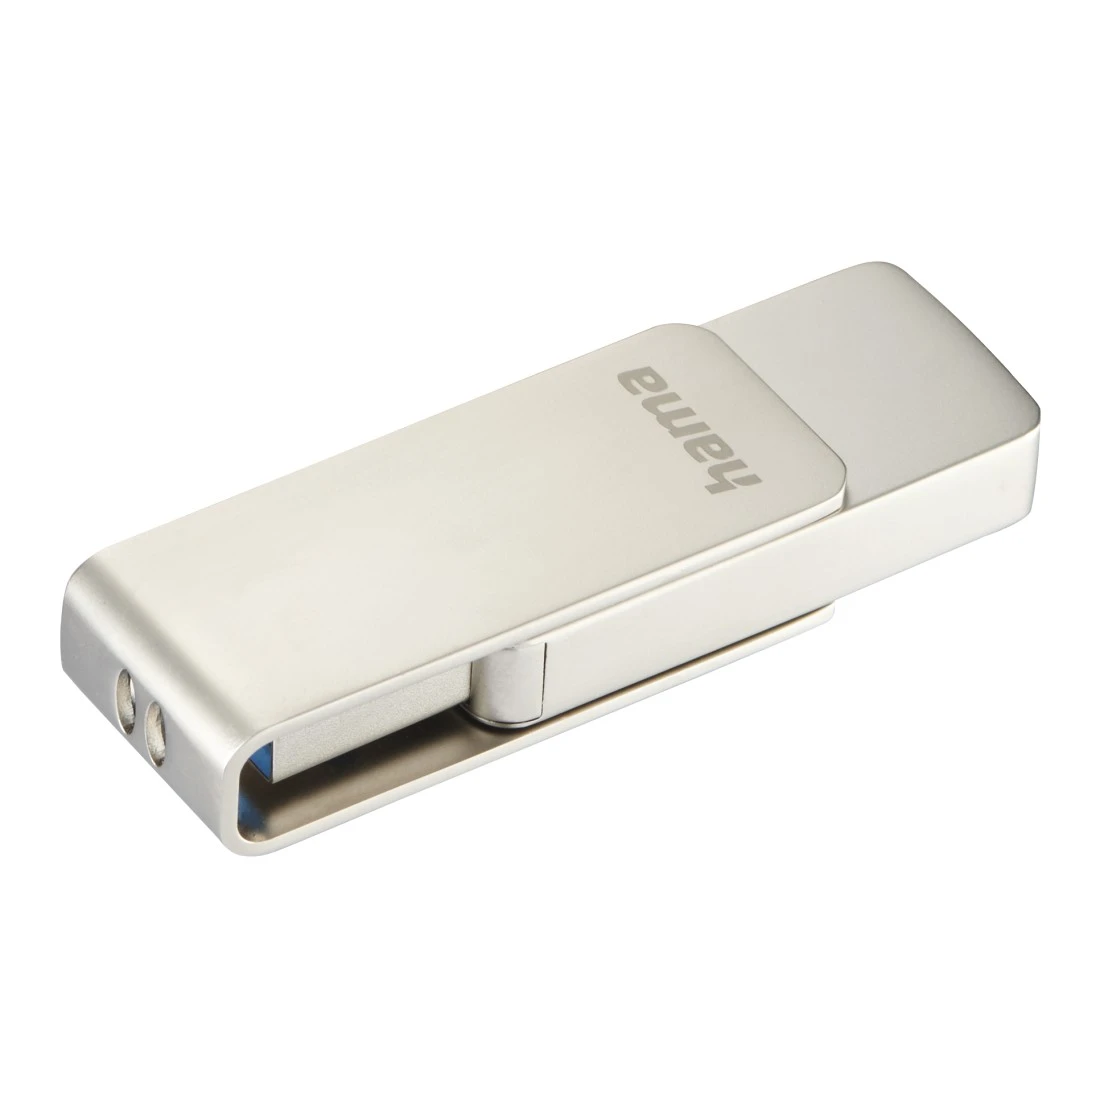 USB-Stick "Rotate Pro", USB 3.0, 256GB, 100MB/s, Silber | Hama